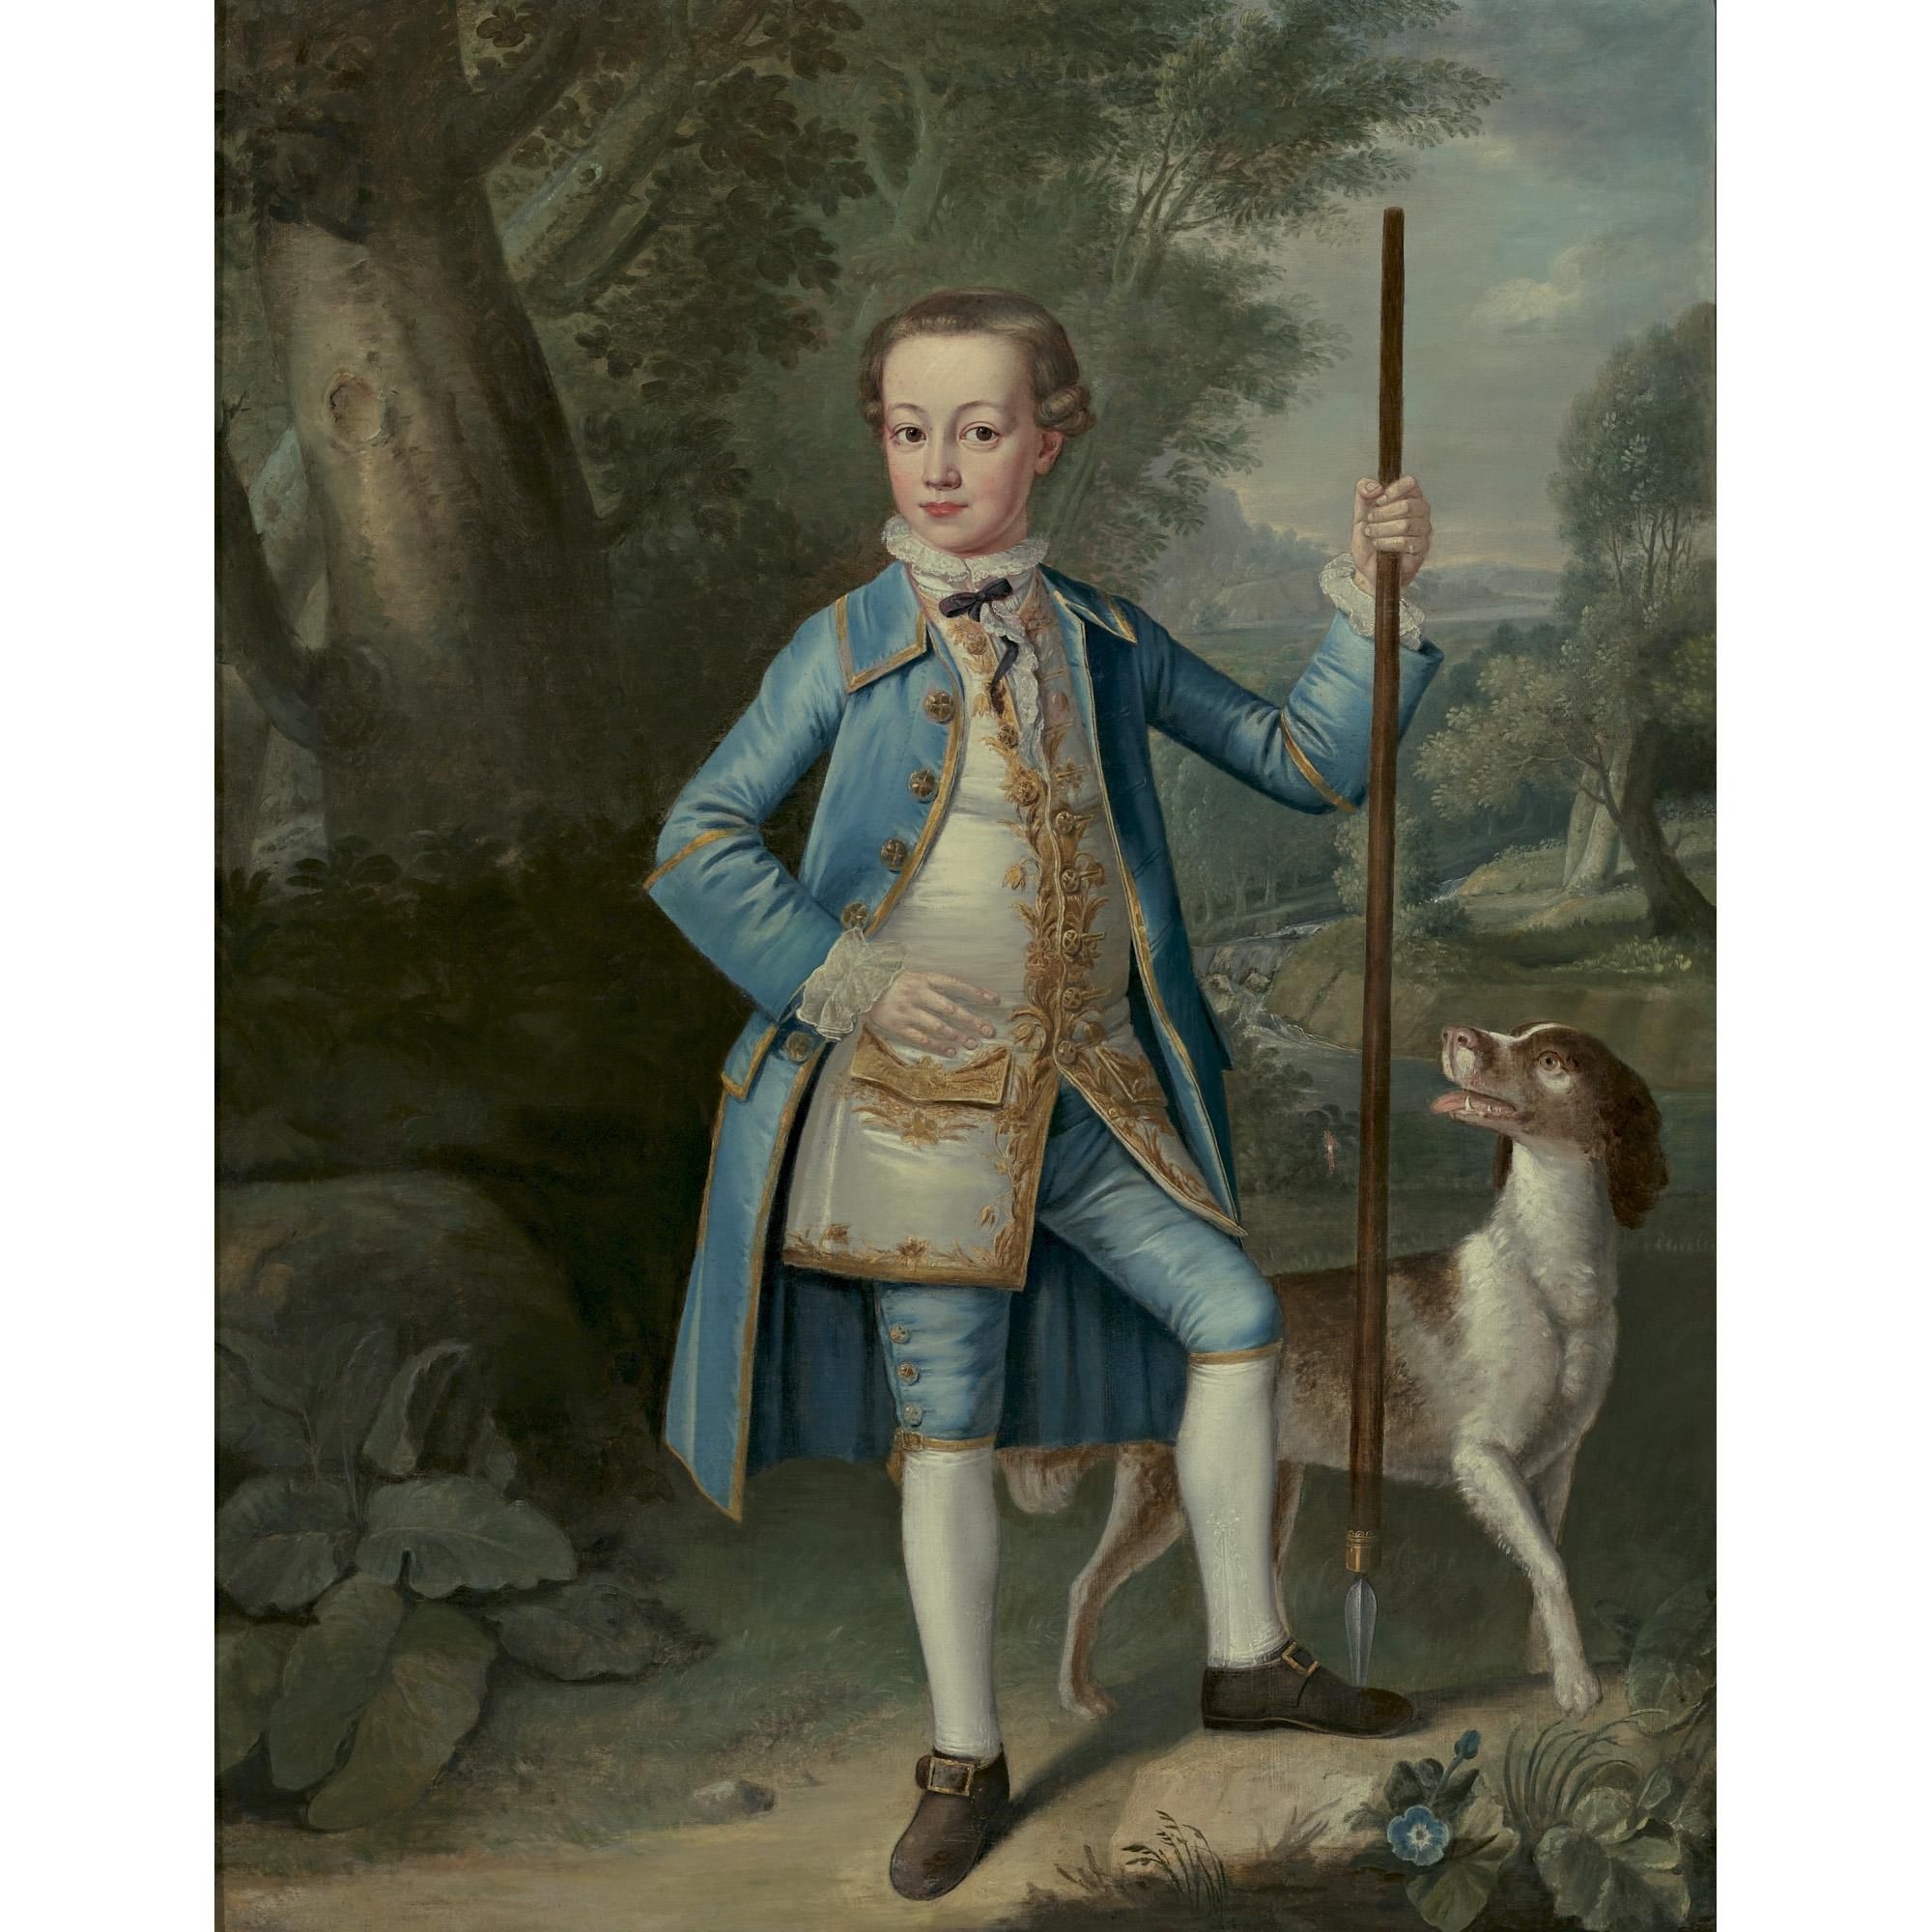 Мальчик 18 века. Художник Bartholomew Dandridge. «Мальчик в голубом» (1770). Гейнсборо мальчик в голубом.